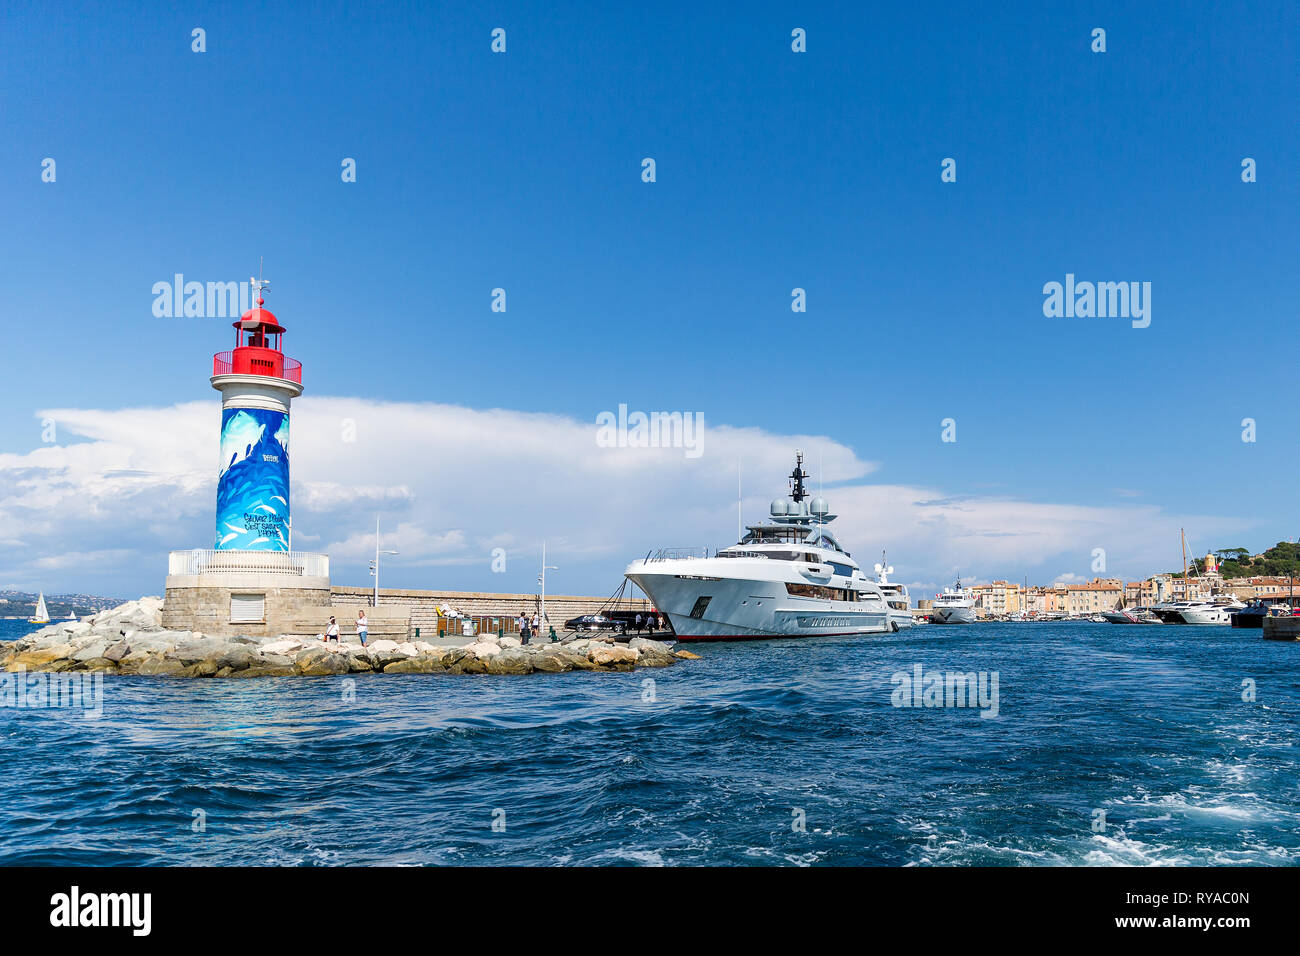 Leuchtturm und Luxusyacht im Eingang zum Hafen in Saint Tropez, Frankreich, 01.09.2018 Bildnachweis: Mario Hommes / HH-Photography Stock Photo